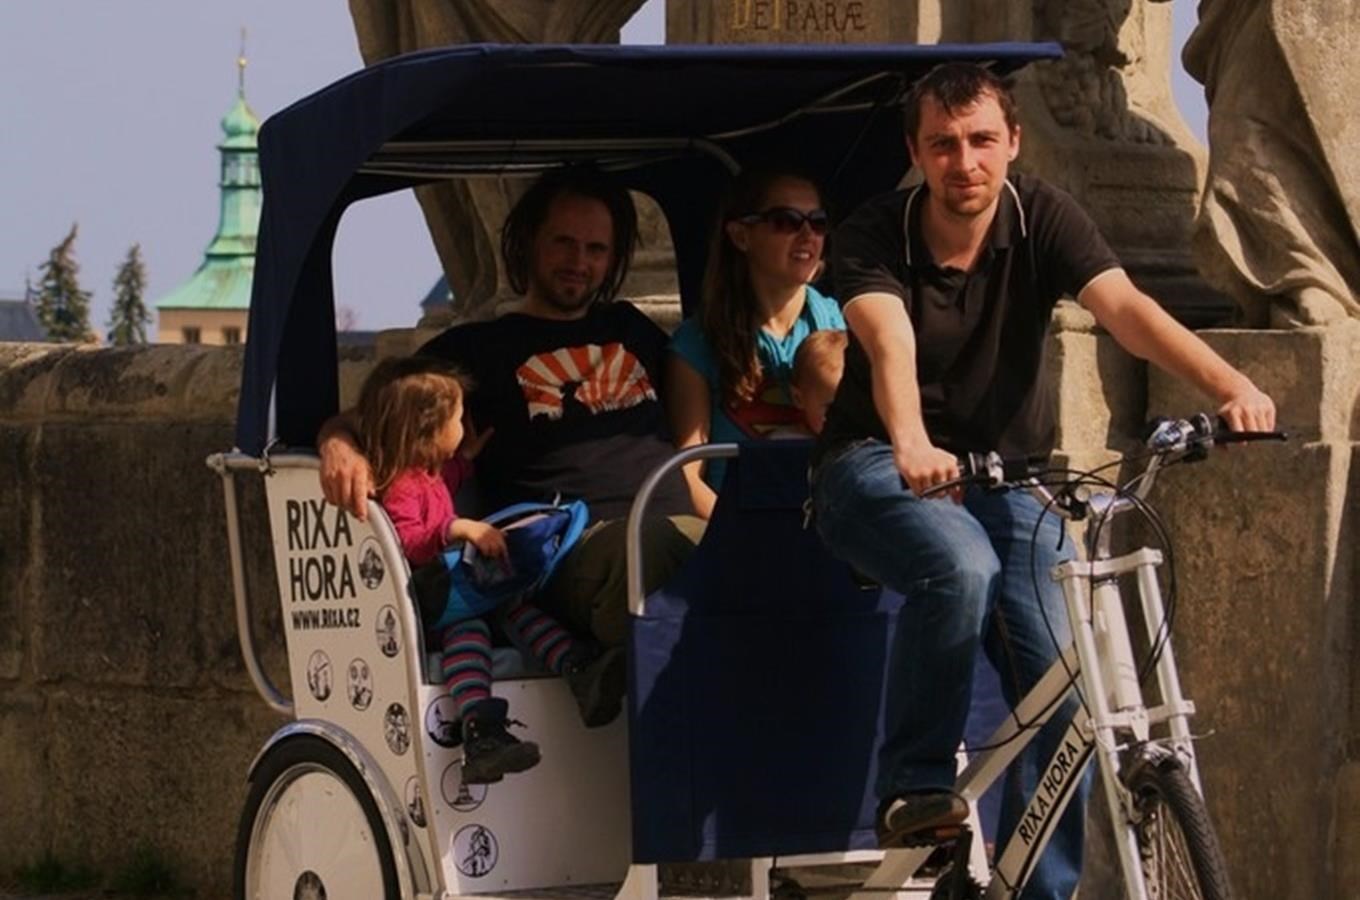 Vyhlídkové jízdy na rikše v Kutné Hoře